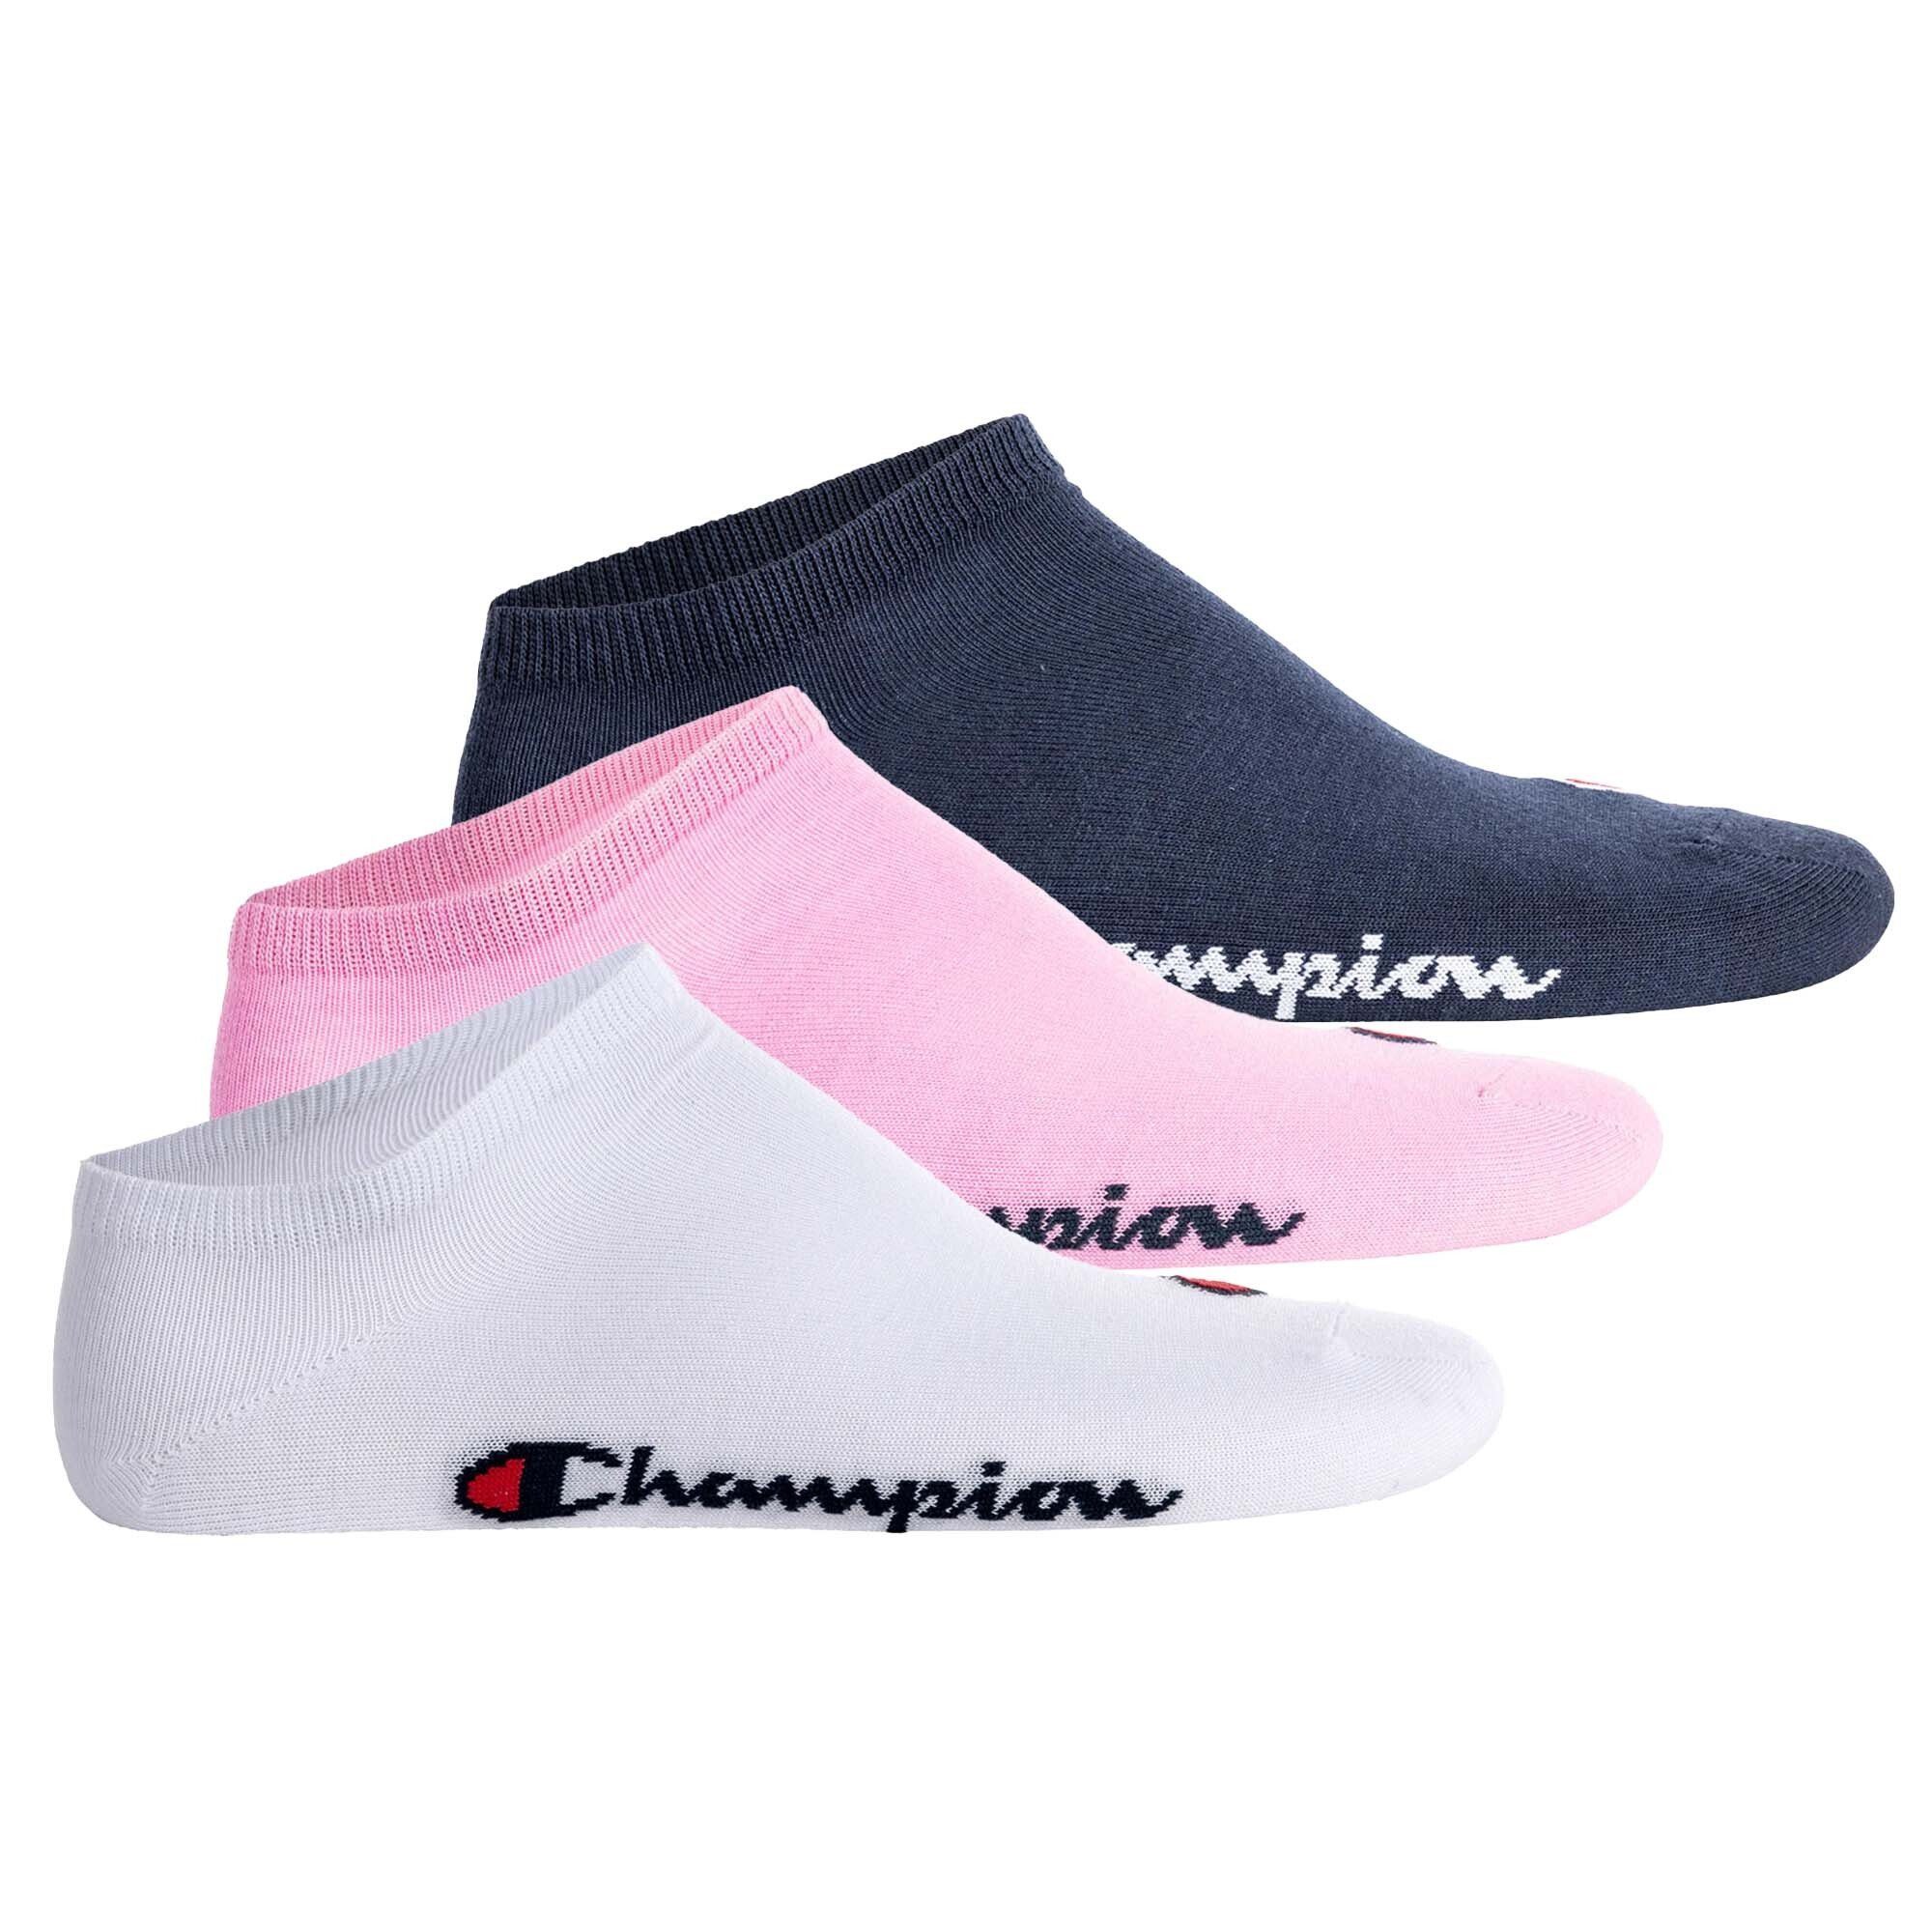 Socken, Sportsocken Paar - Rosa/Weiß/Blau Champion Basic 3 Socken Unisex Sneaker